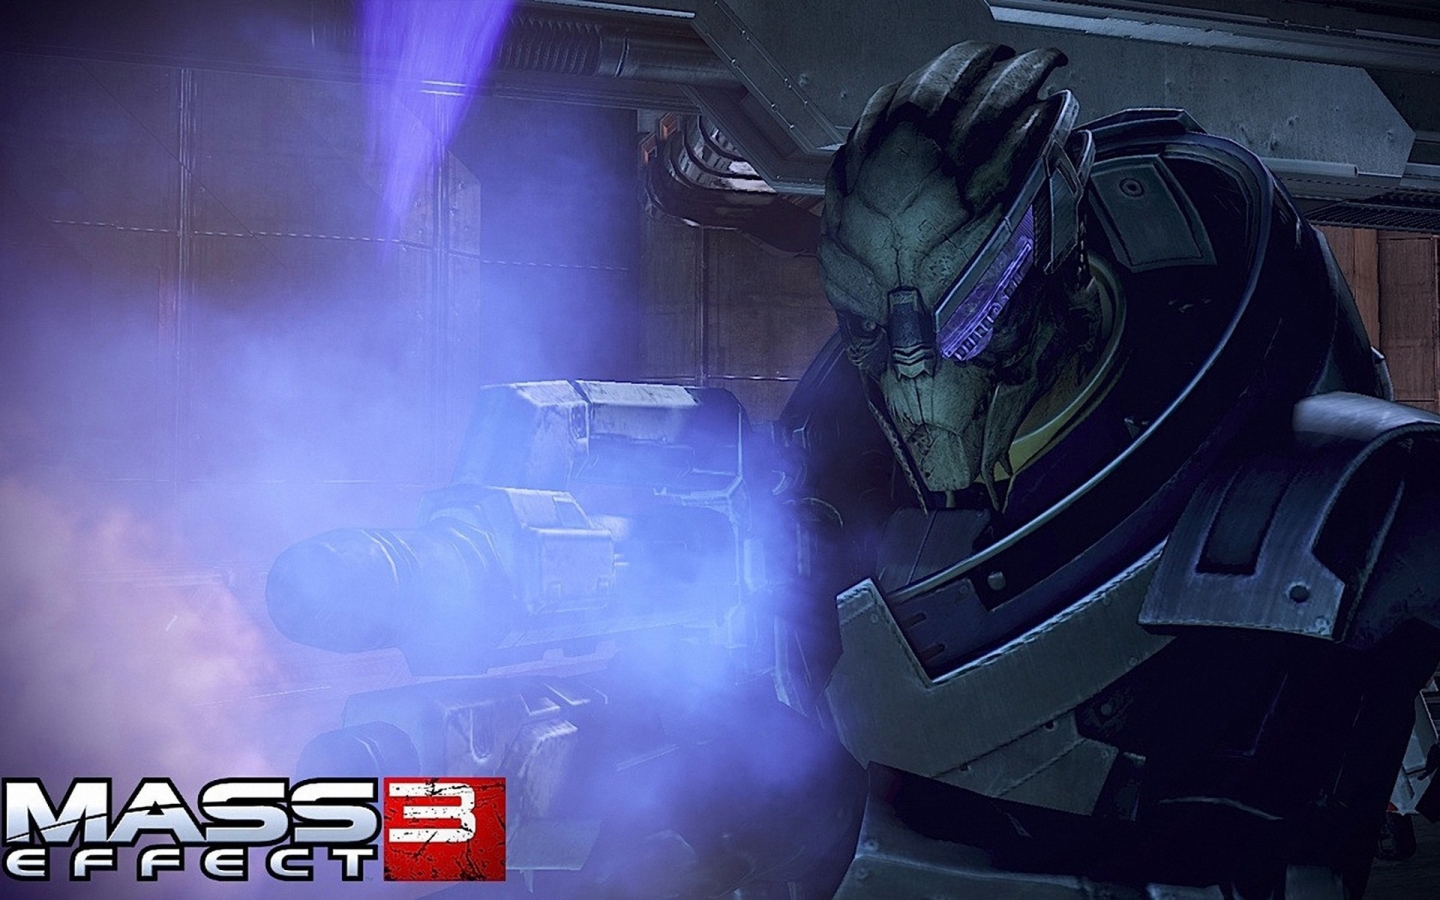 Mass Effect 3 Alien for 1440 x 900 widescreen resolution